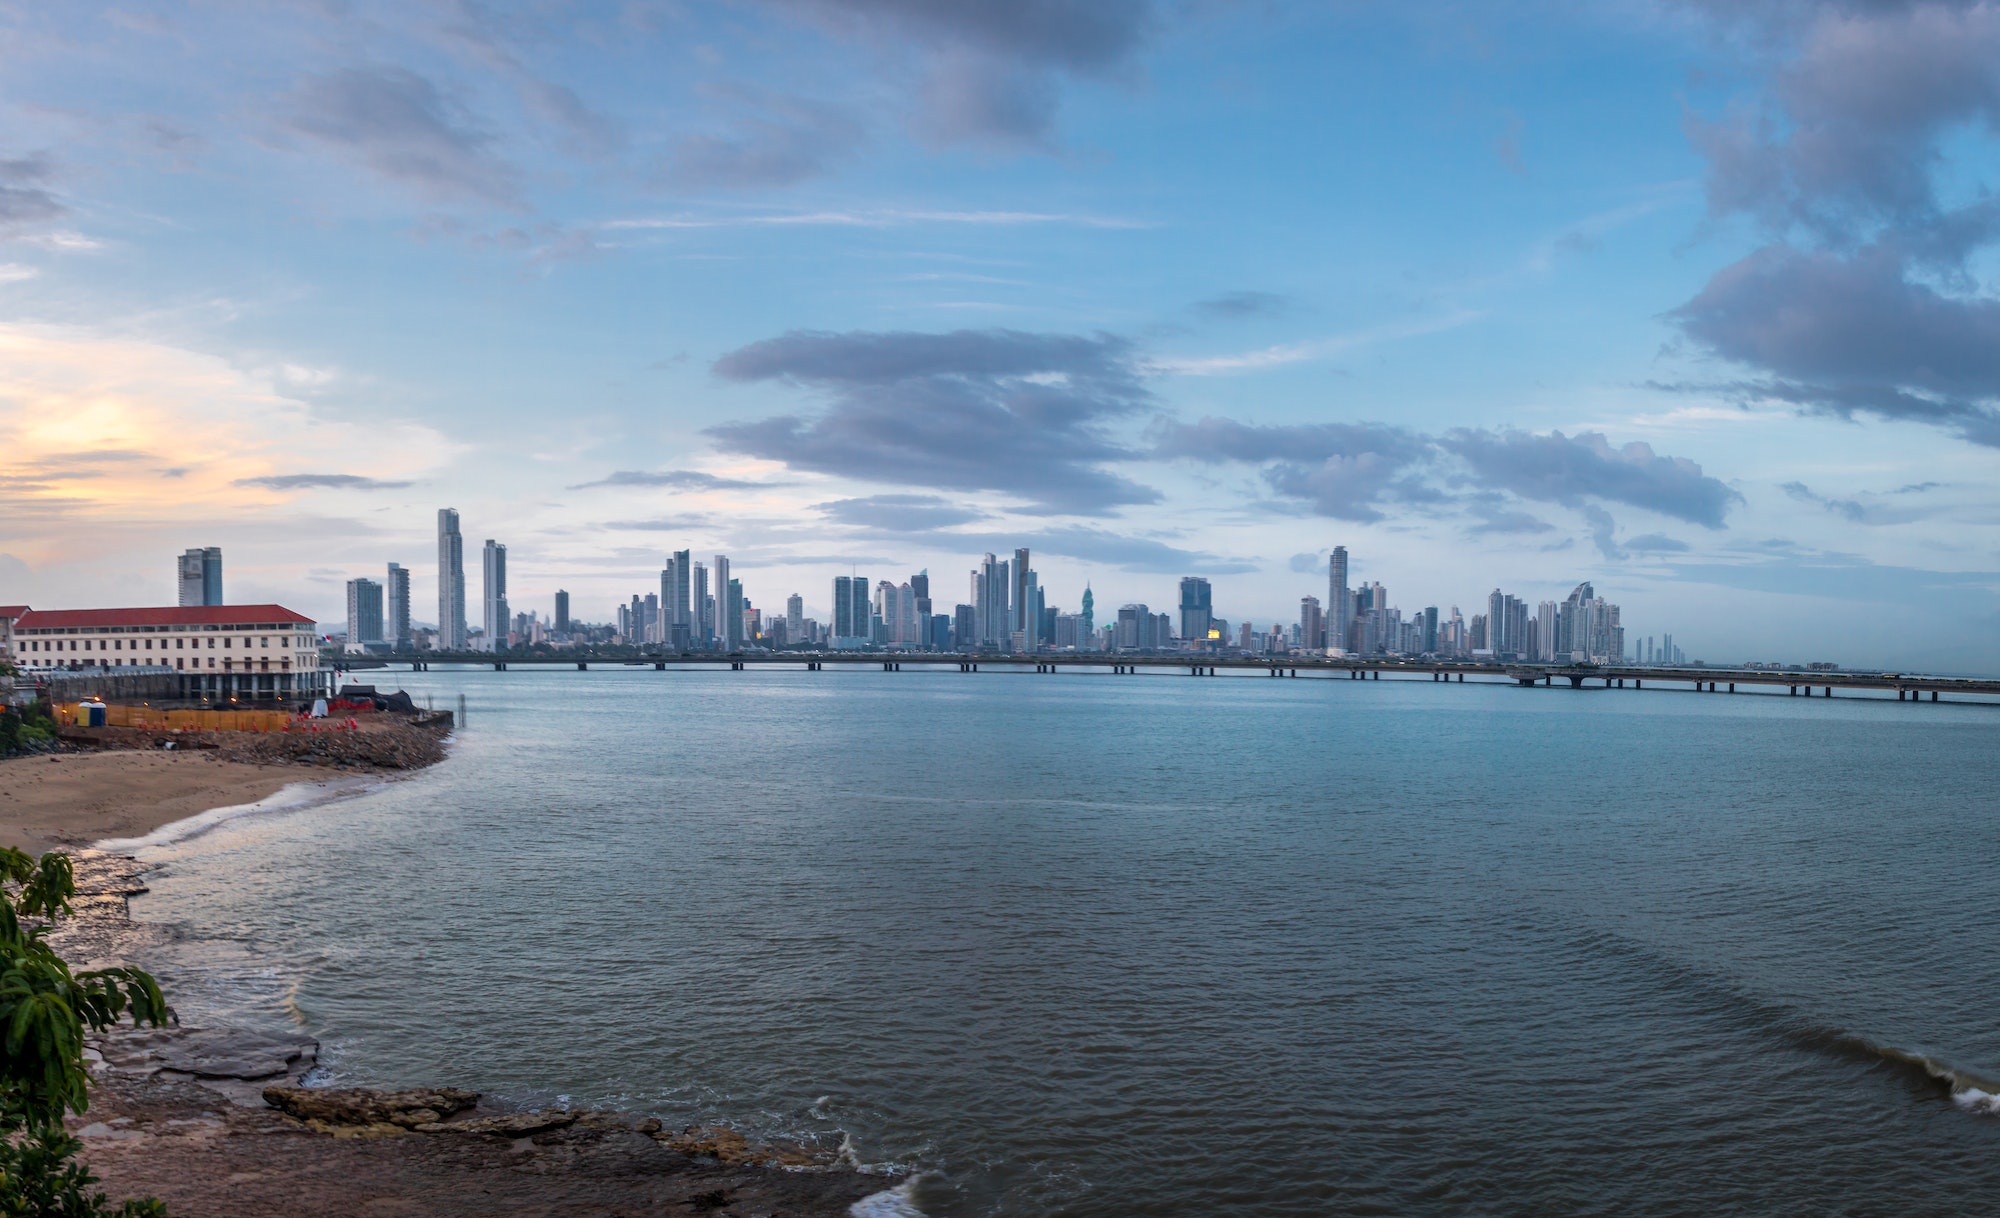 Panama City Skyline - Panama City, Panama